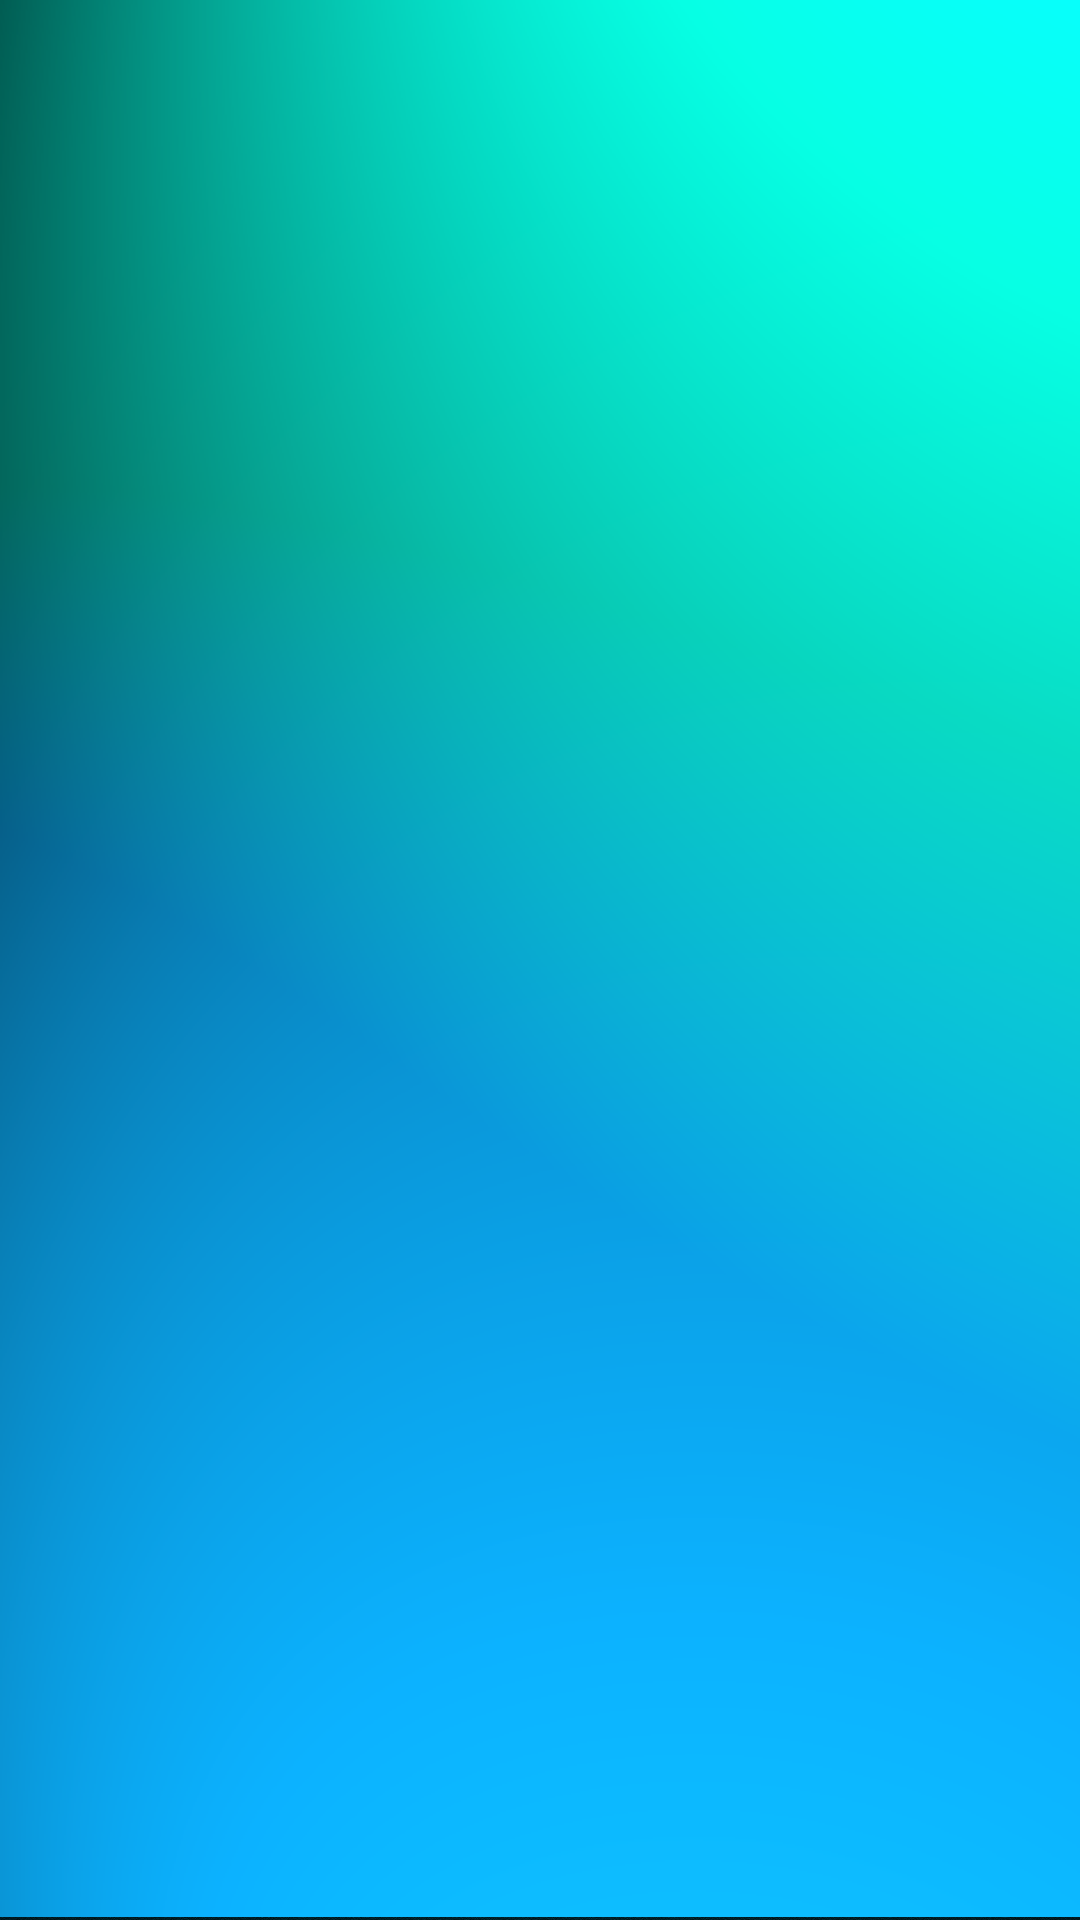 [75+] Blue Android Wallpaper - WallpaperSafari